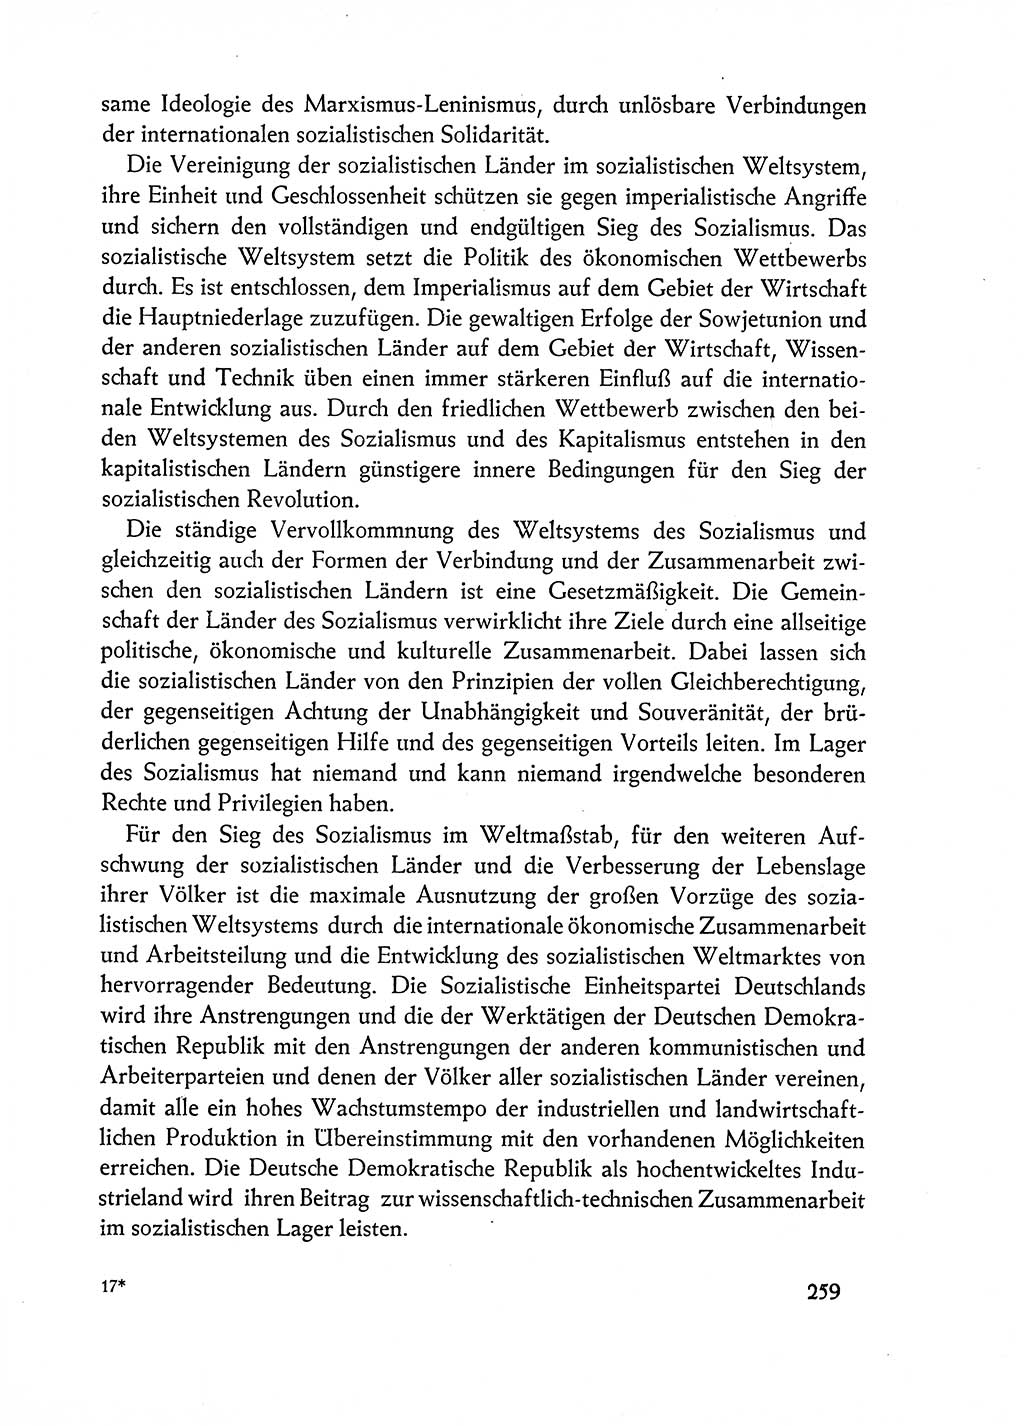 Dokumente der Sozialistischen Einheitspartei Deutschlands (SED) [Deutsche Demokratische Republik (DDR)] 1962-1963, Seite 259 (Dok. SED DDR 1962-1963, S. 259)